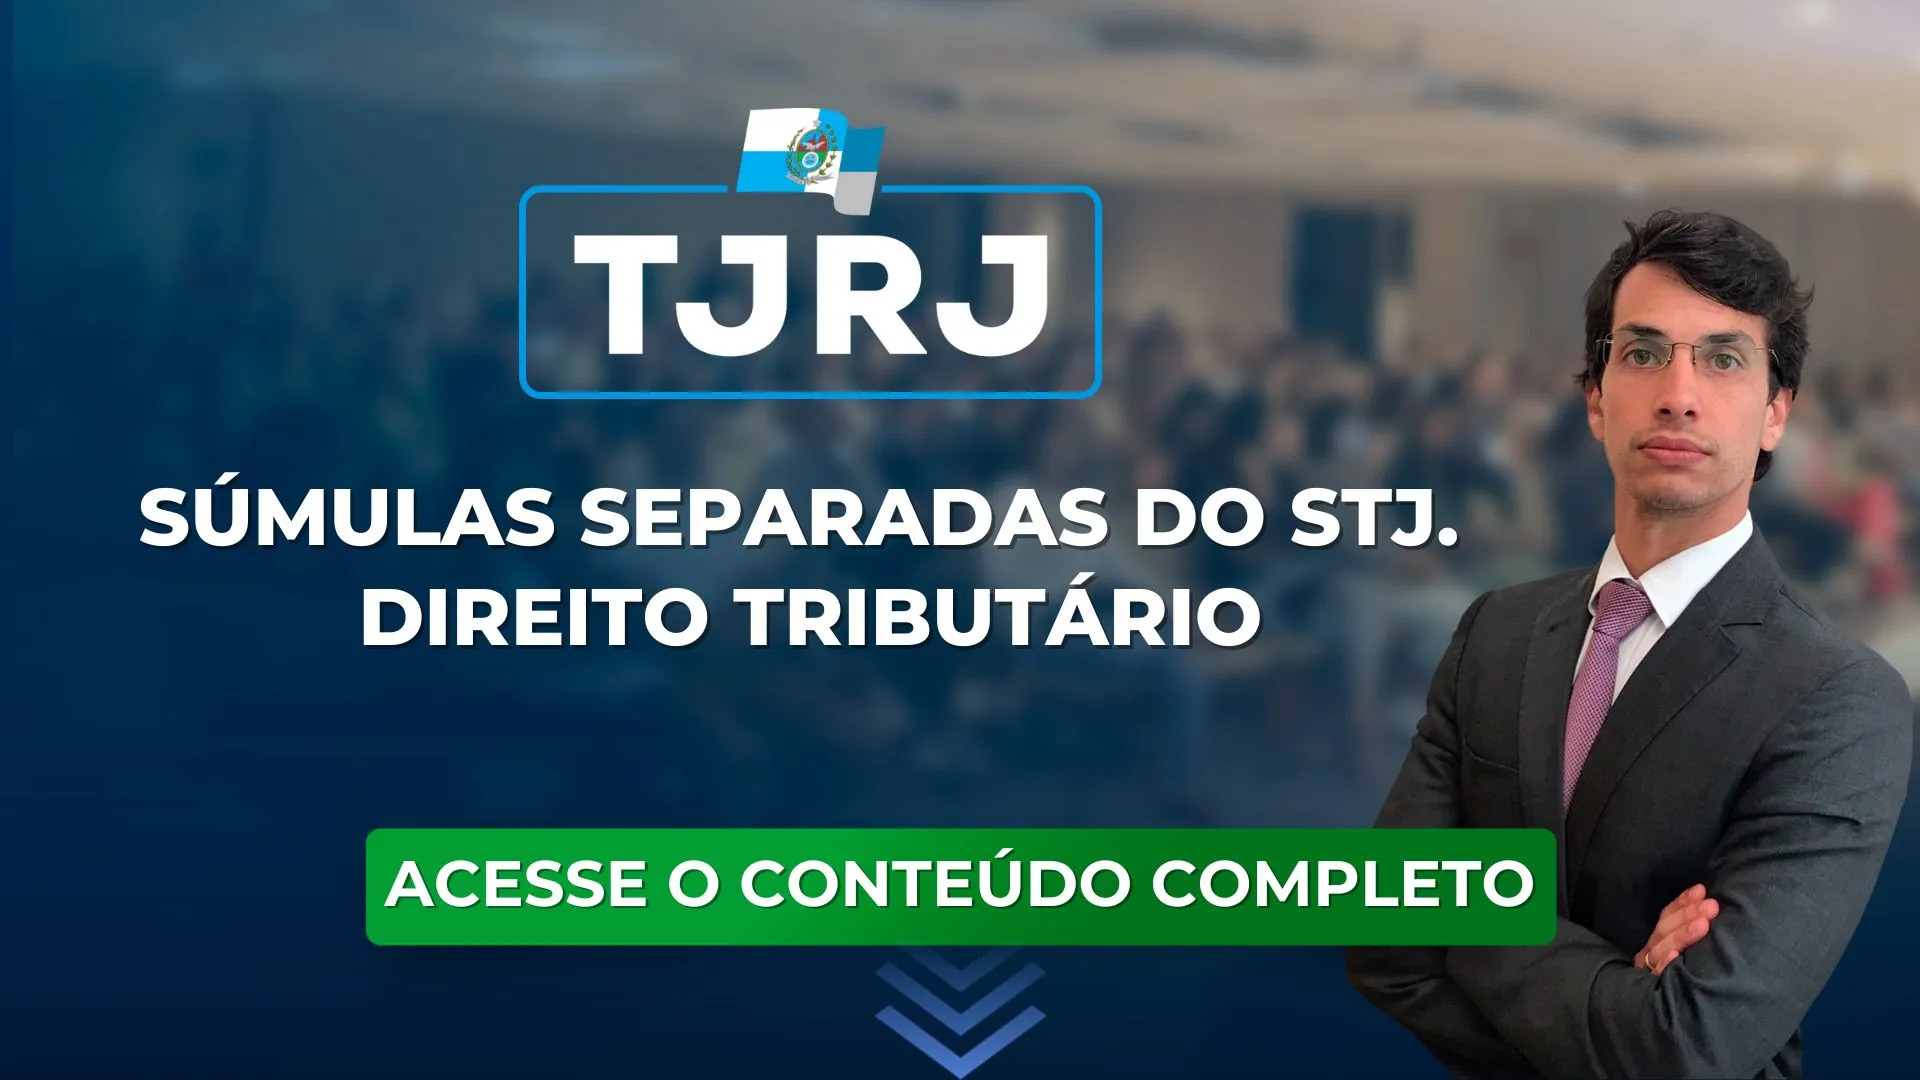 TJRJ: súmulas separadas do STJ para o concurso. Direito Tributário